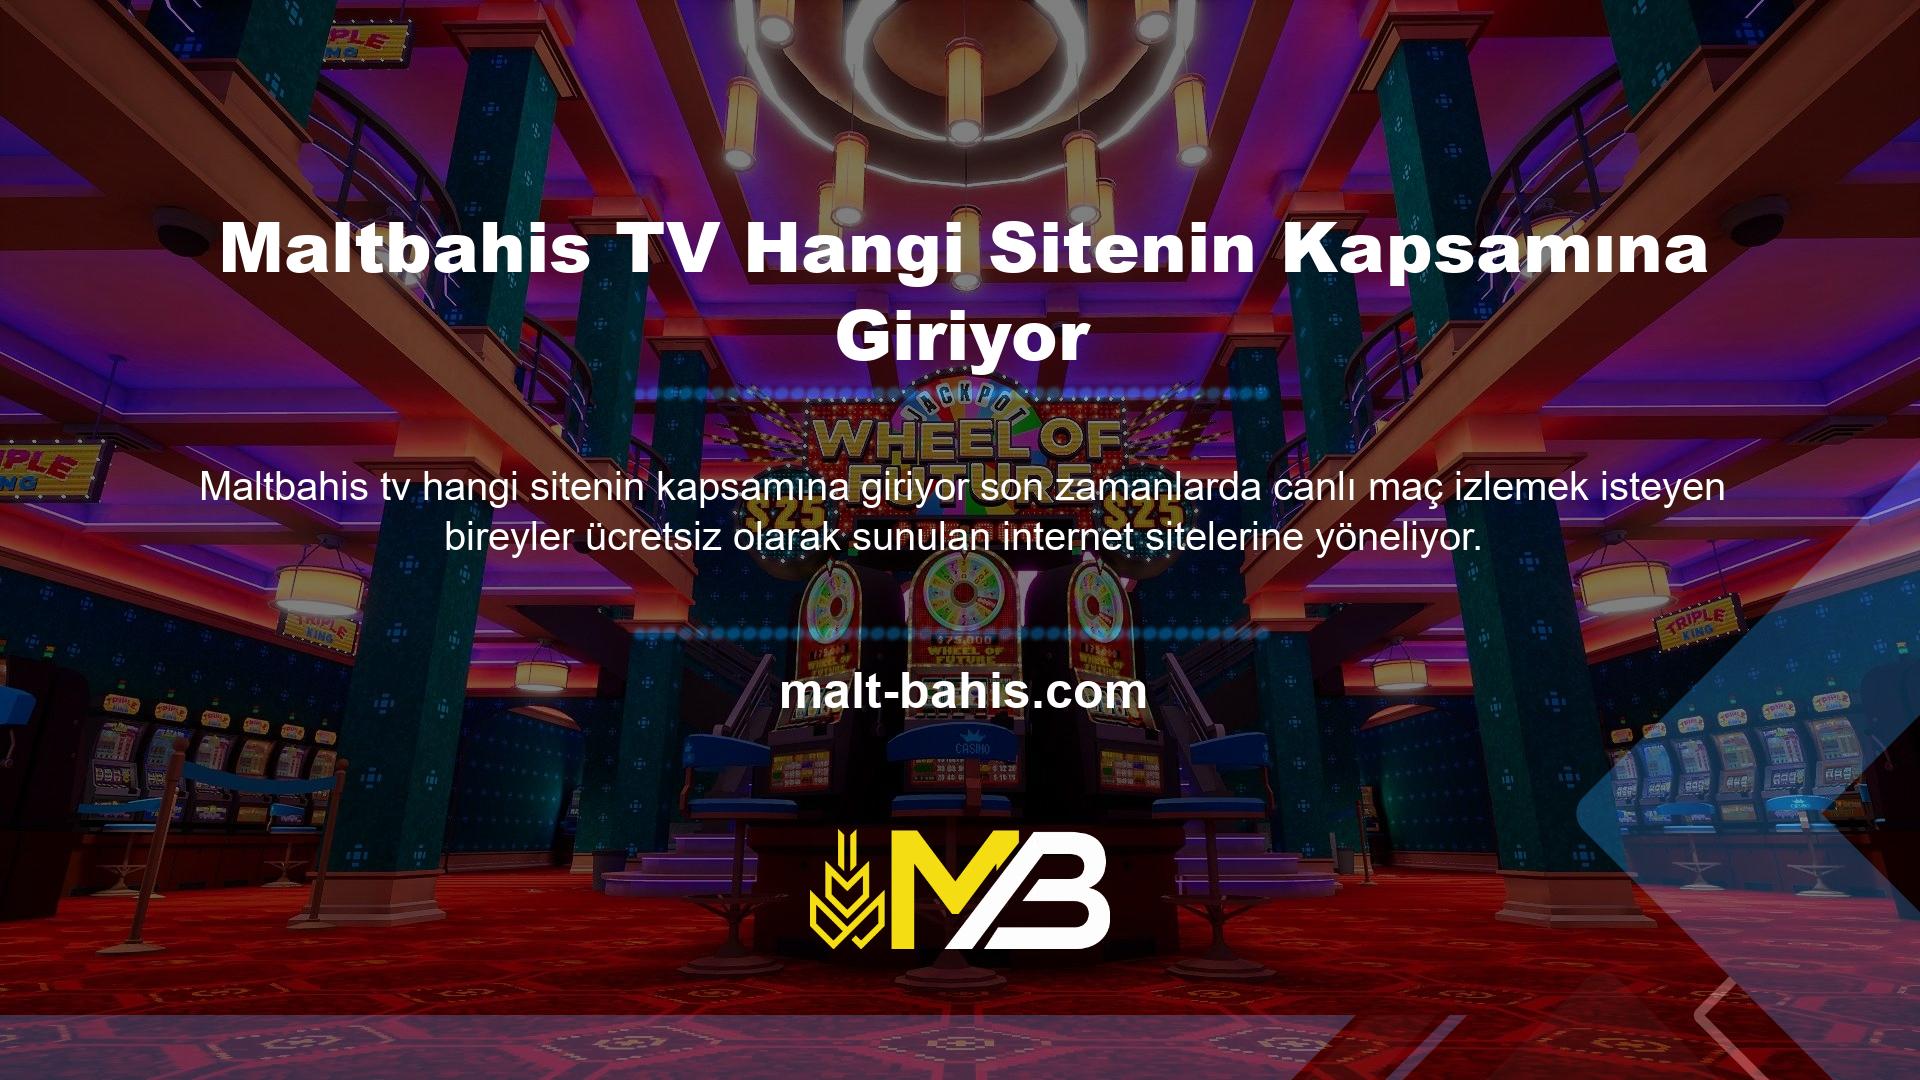 Maltbahis TV web sitesini ziyaret etmek isteyenler kalitesini deneyimleyebilir ve en ayrıcalıklı canlı yayın seçeneği olduğuna güvenebilirler